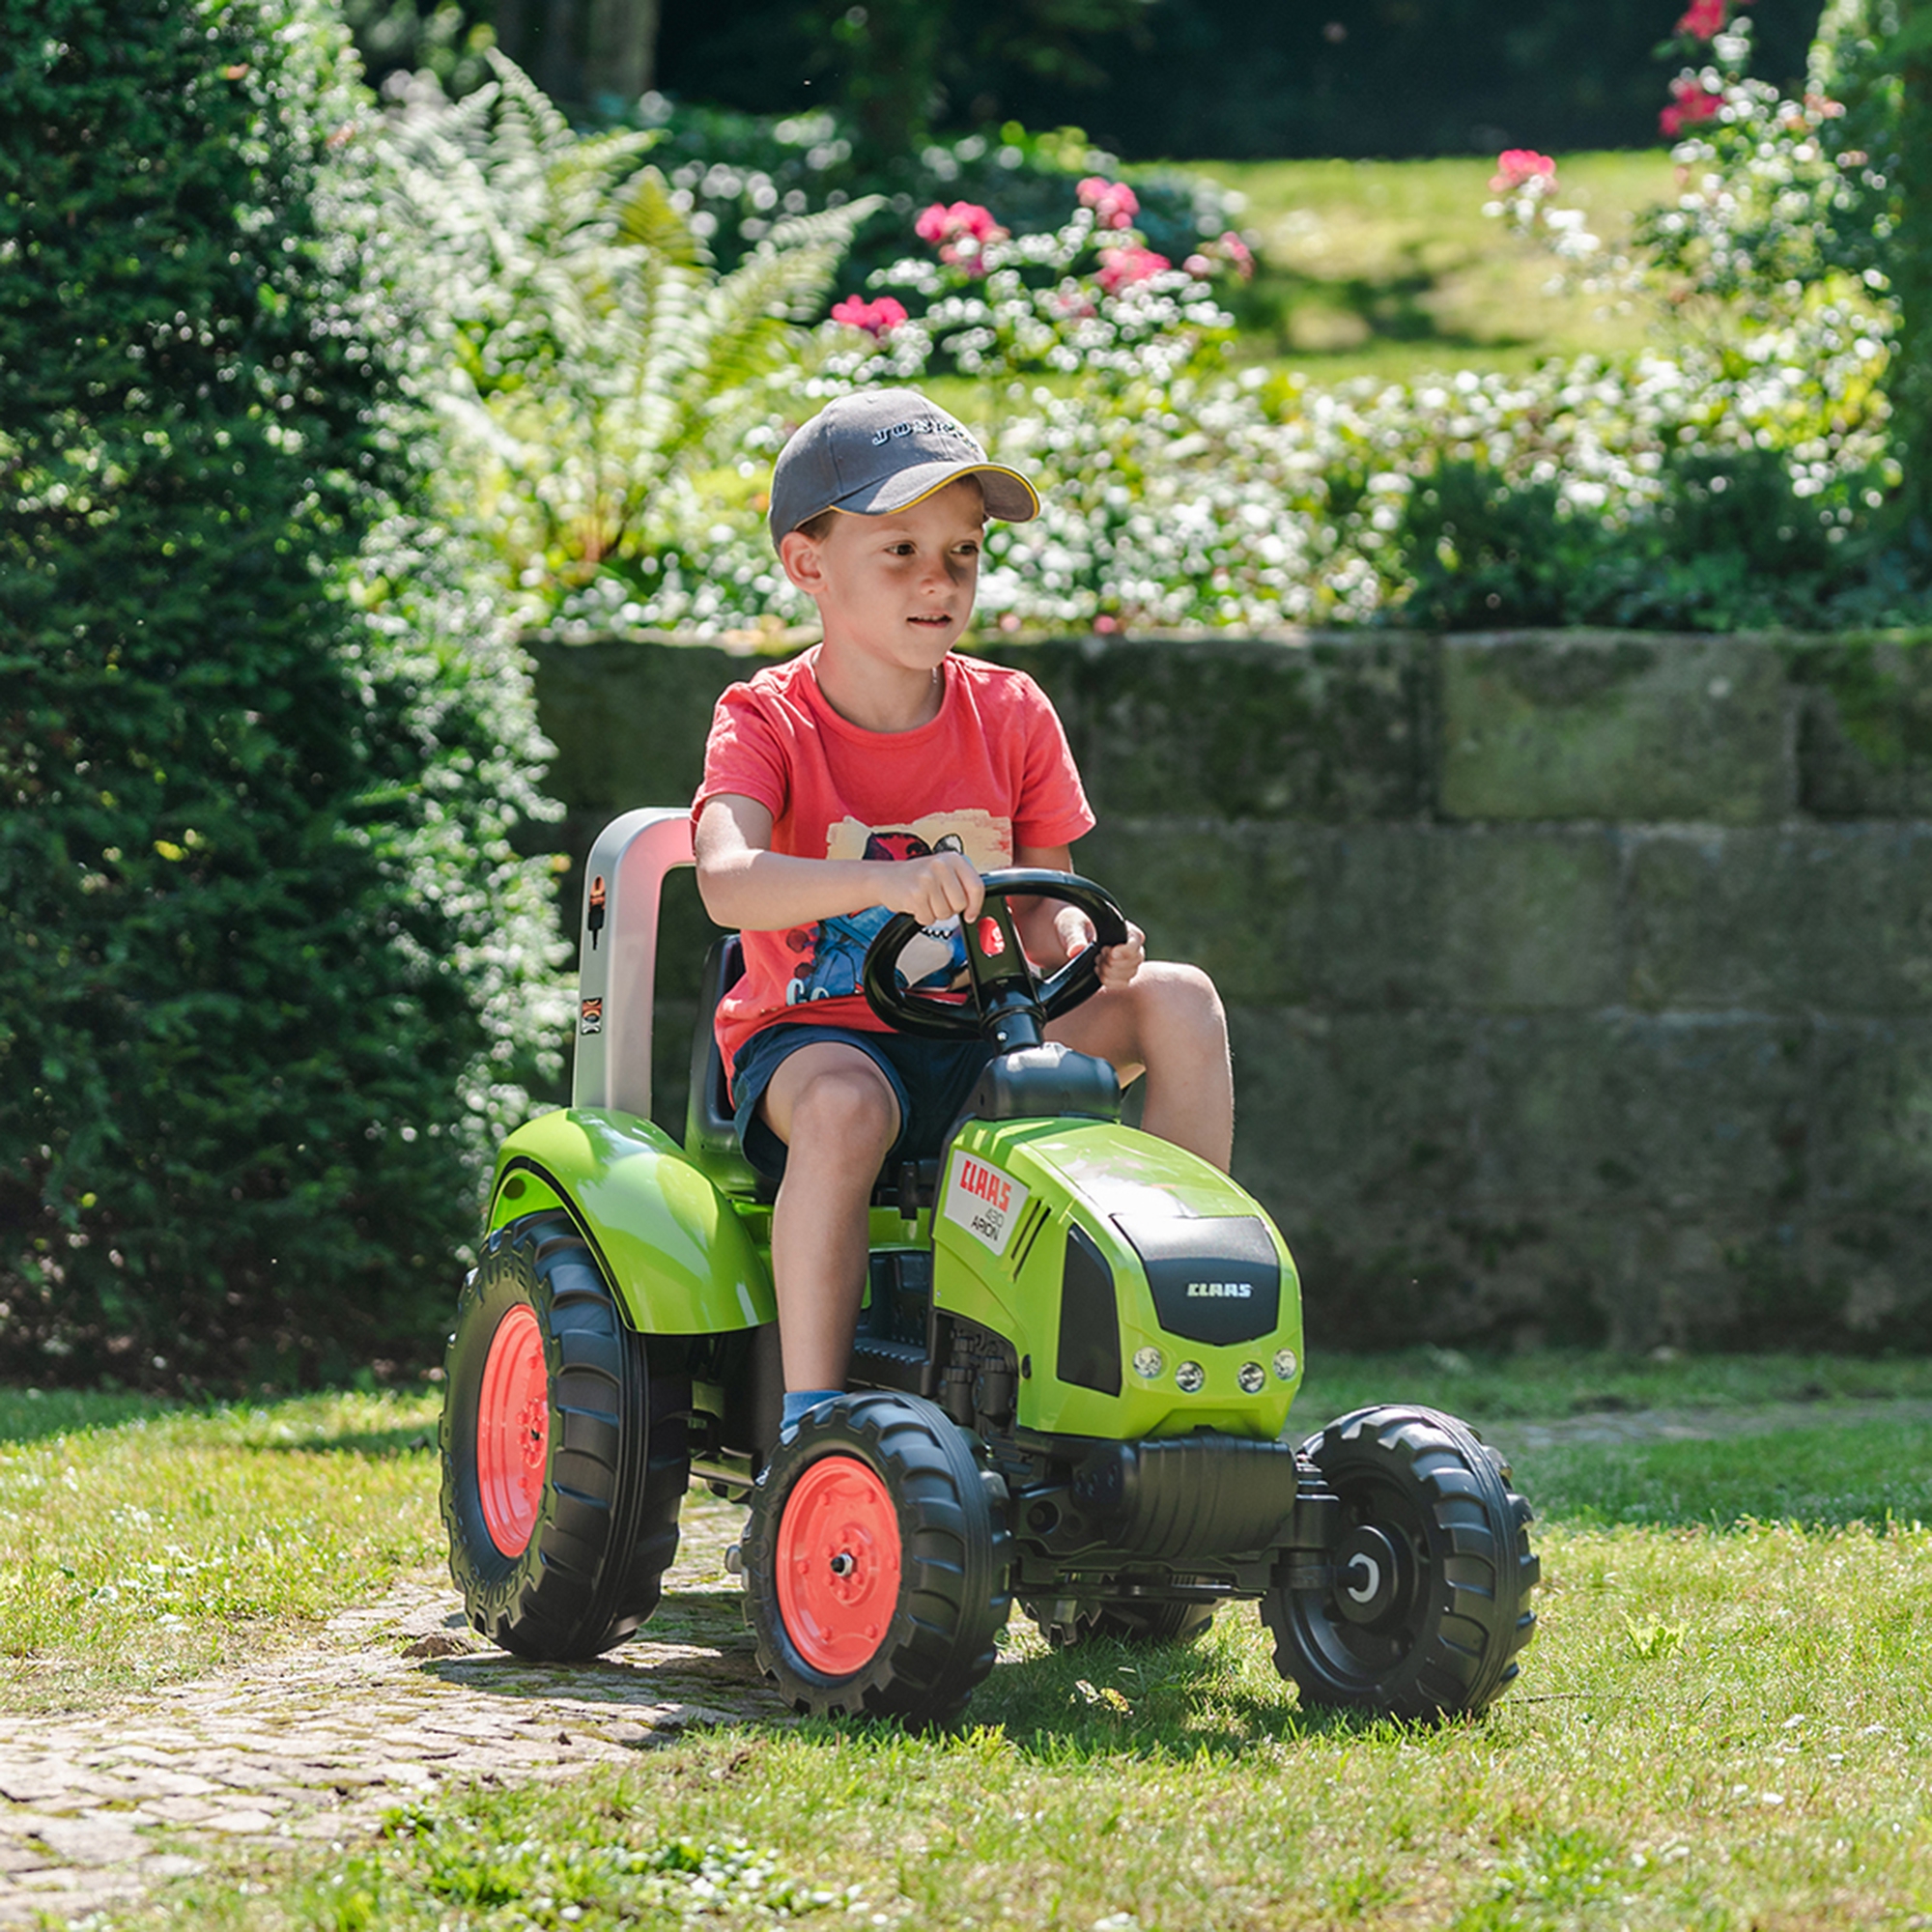 Traktor na pedały Claas duży z przyczepką od 3 lat, zabawka dla dzieci, FALK